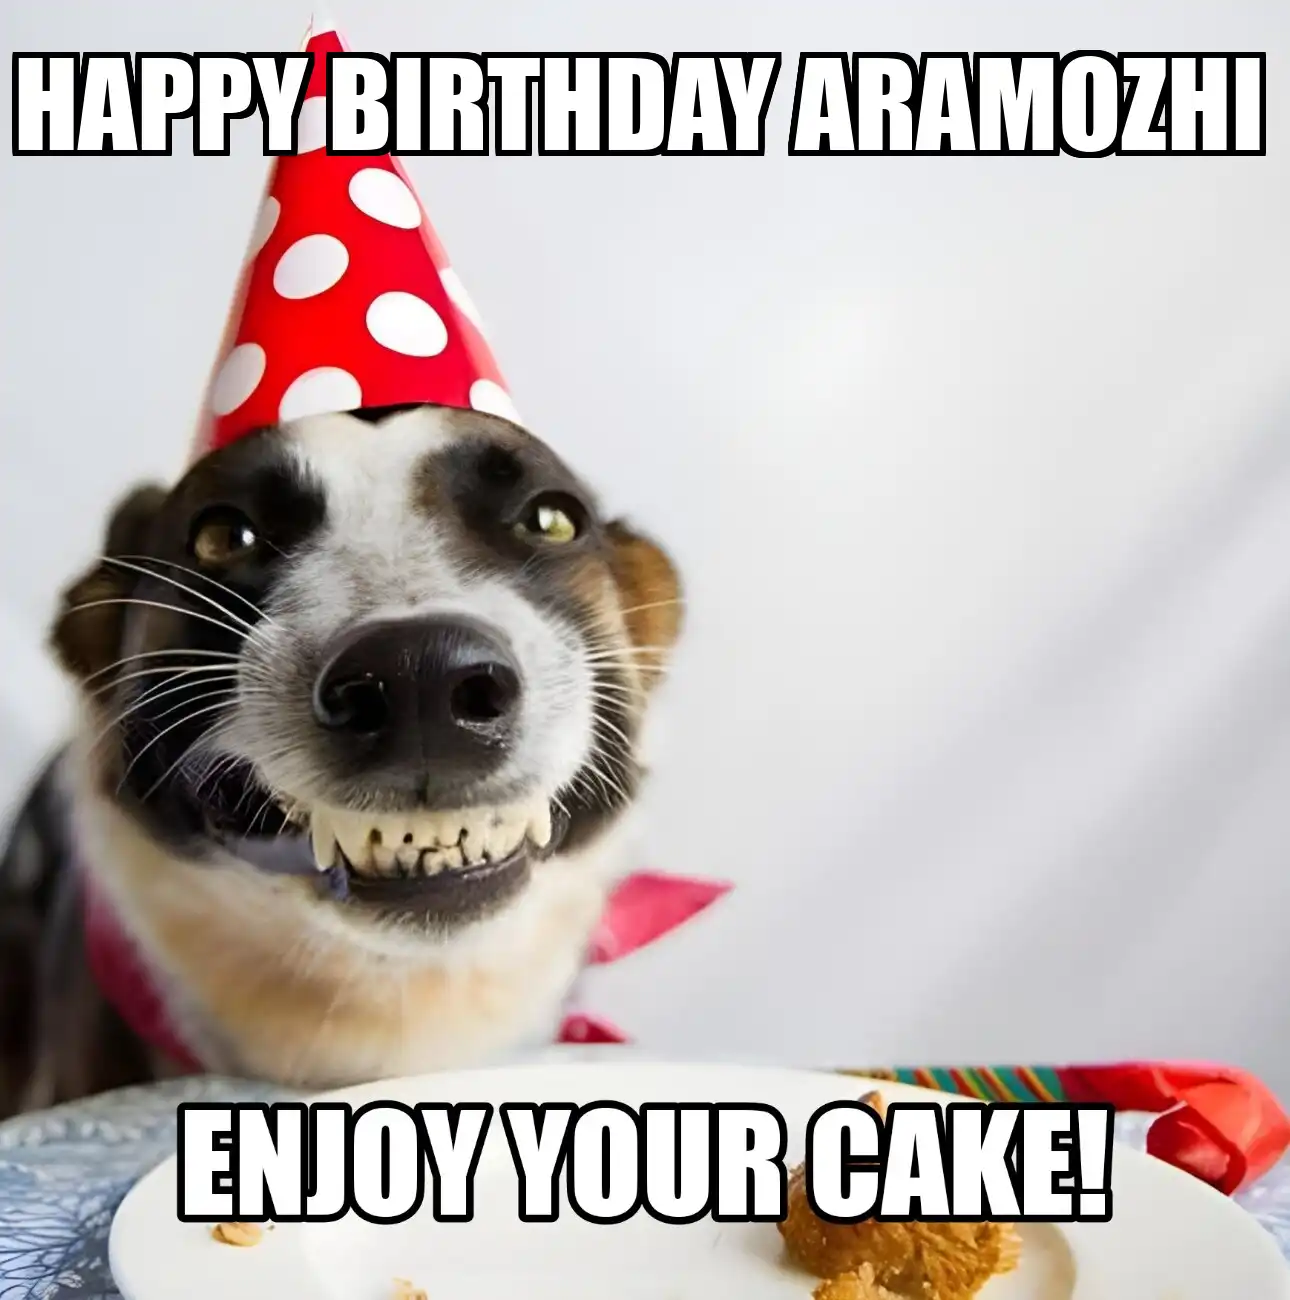 Happy Birthday Aramozhi Enjoy Your Cake Dog Meme